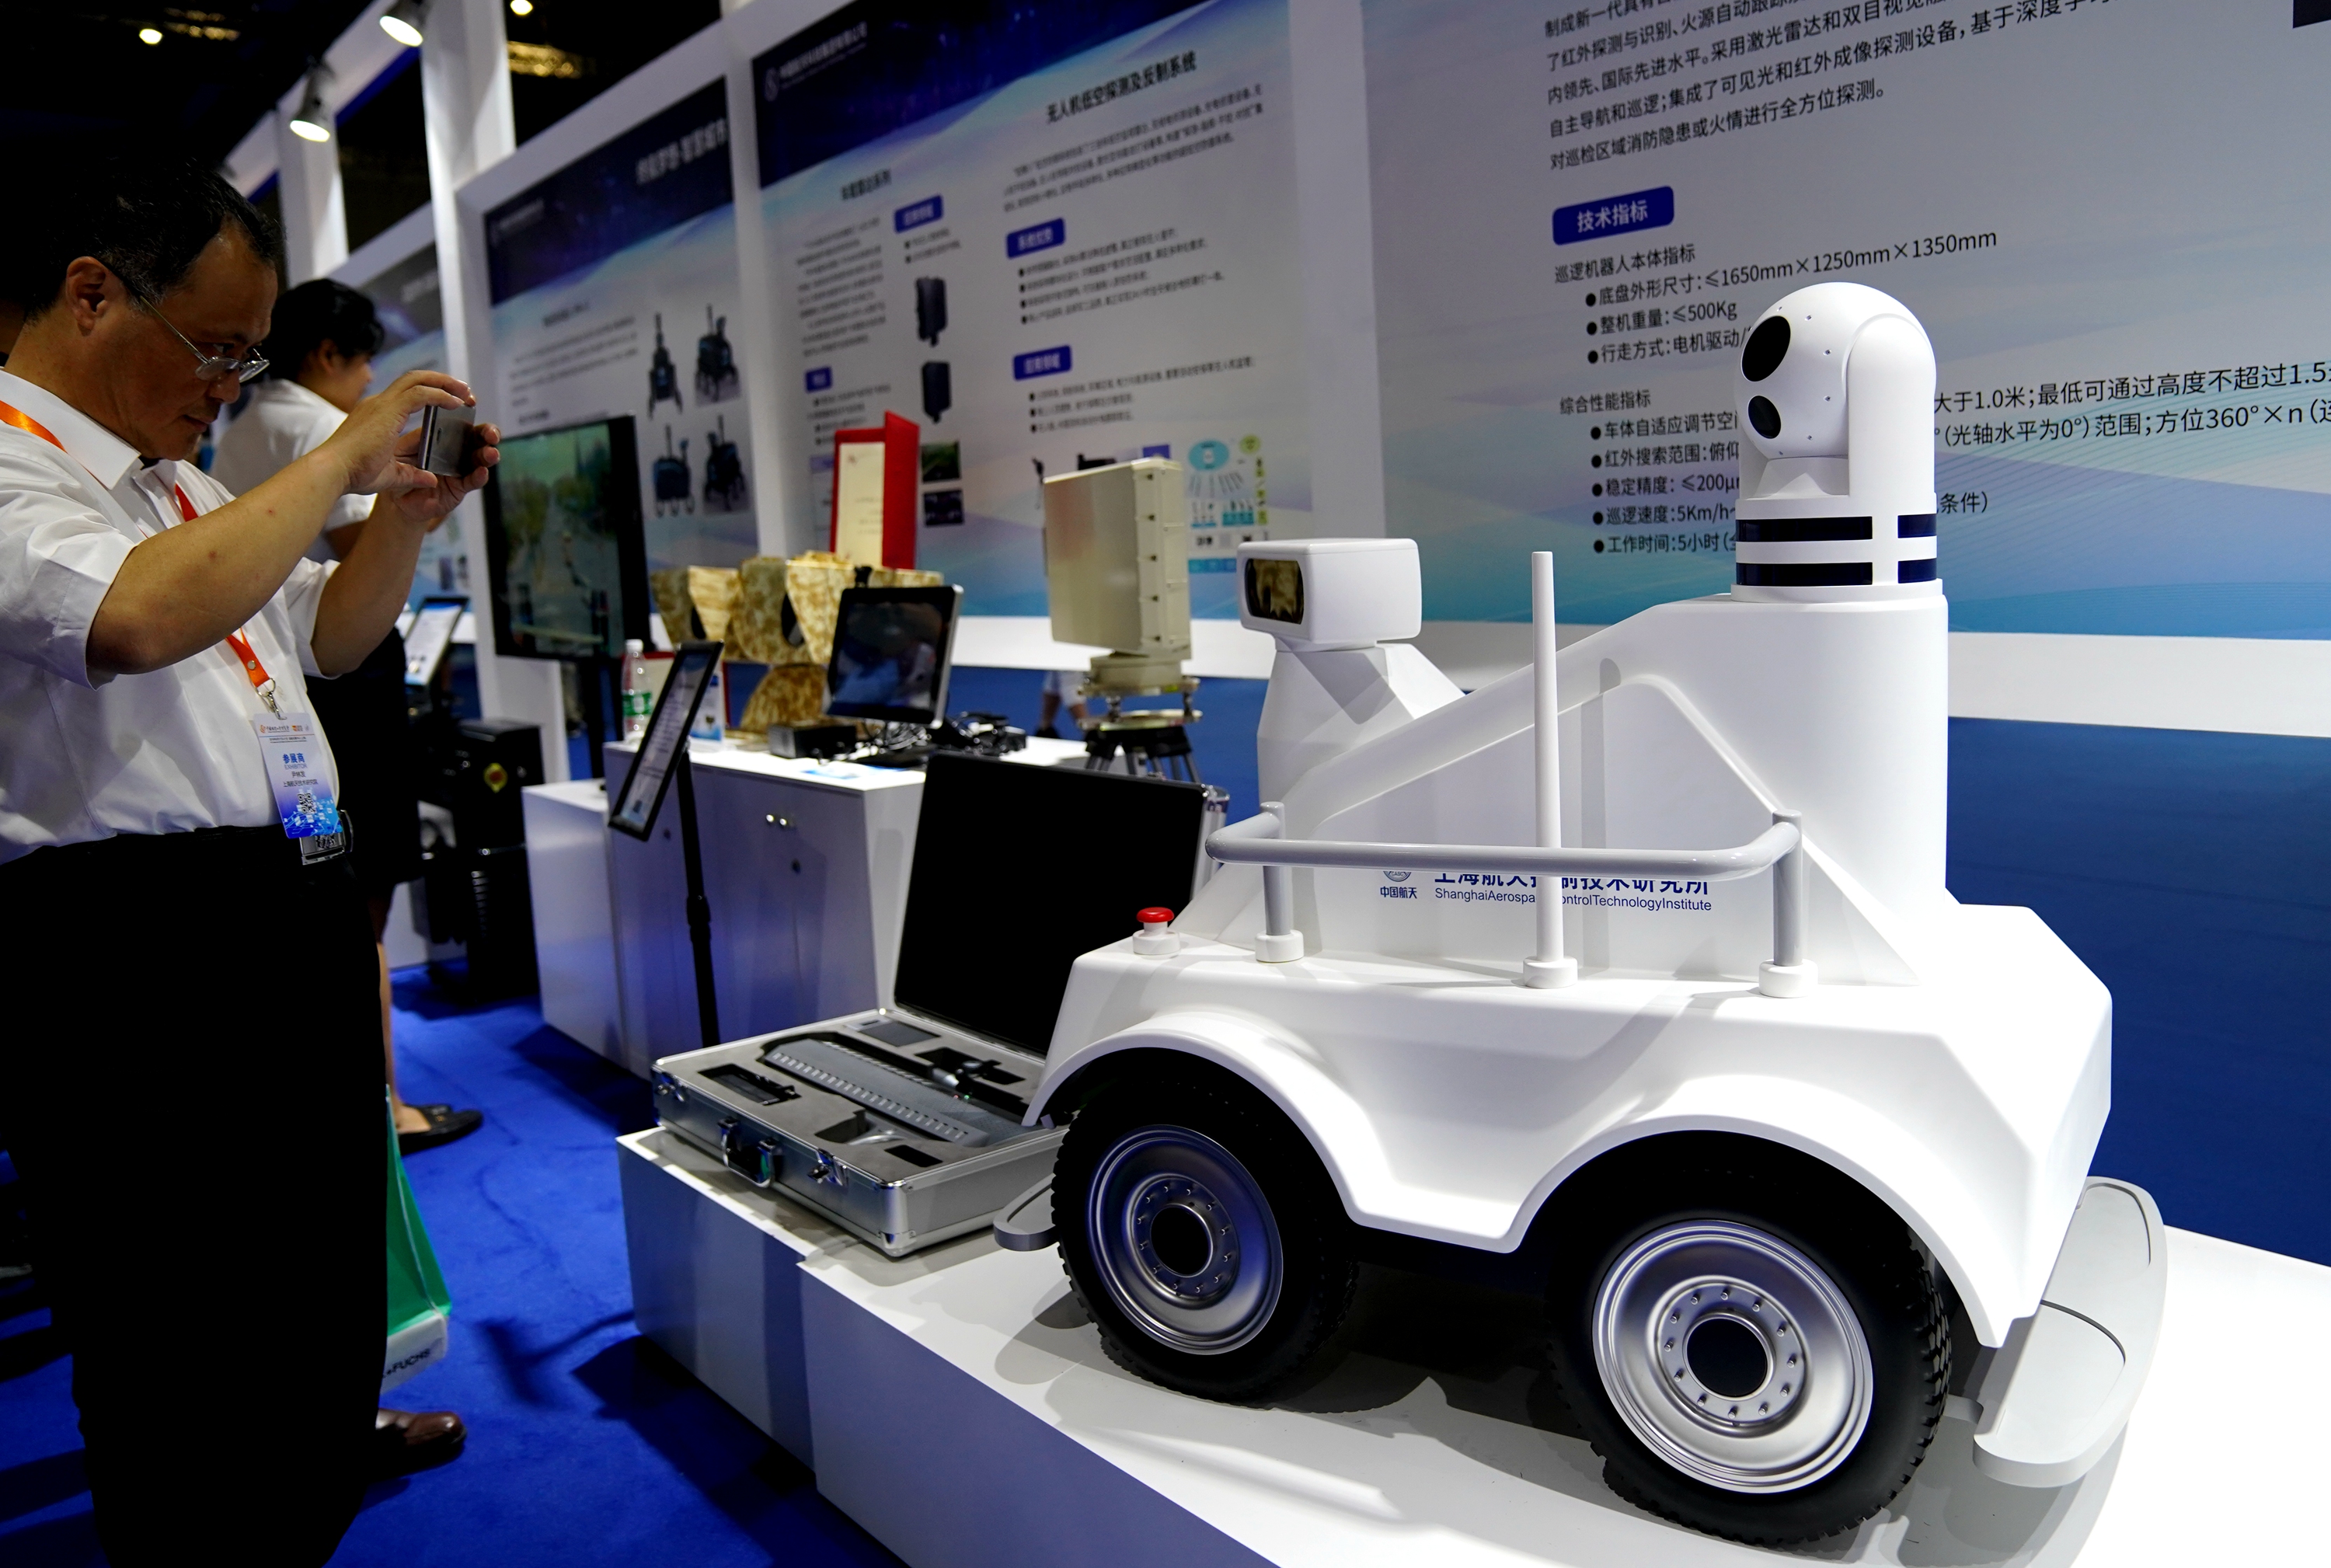 上海航天技术研究院在工博会上展示的智能自主消防巡检机器人(9月17日